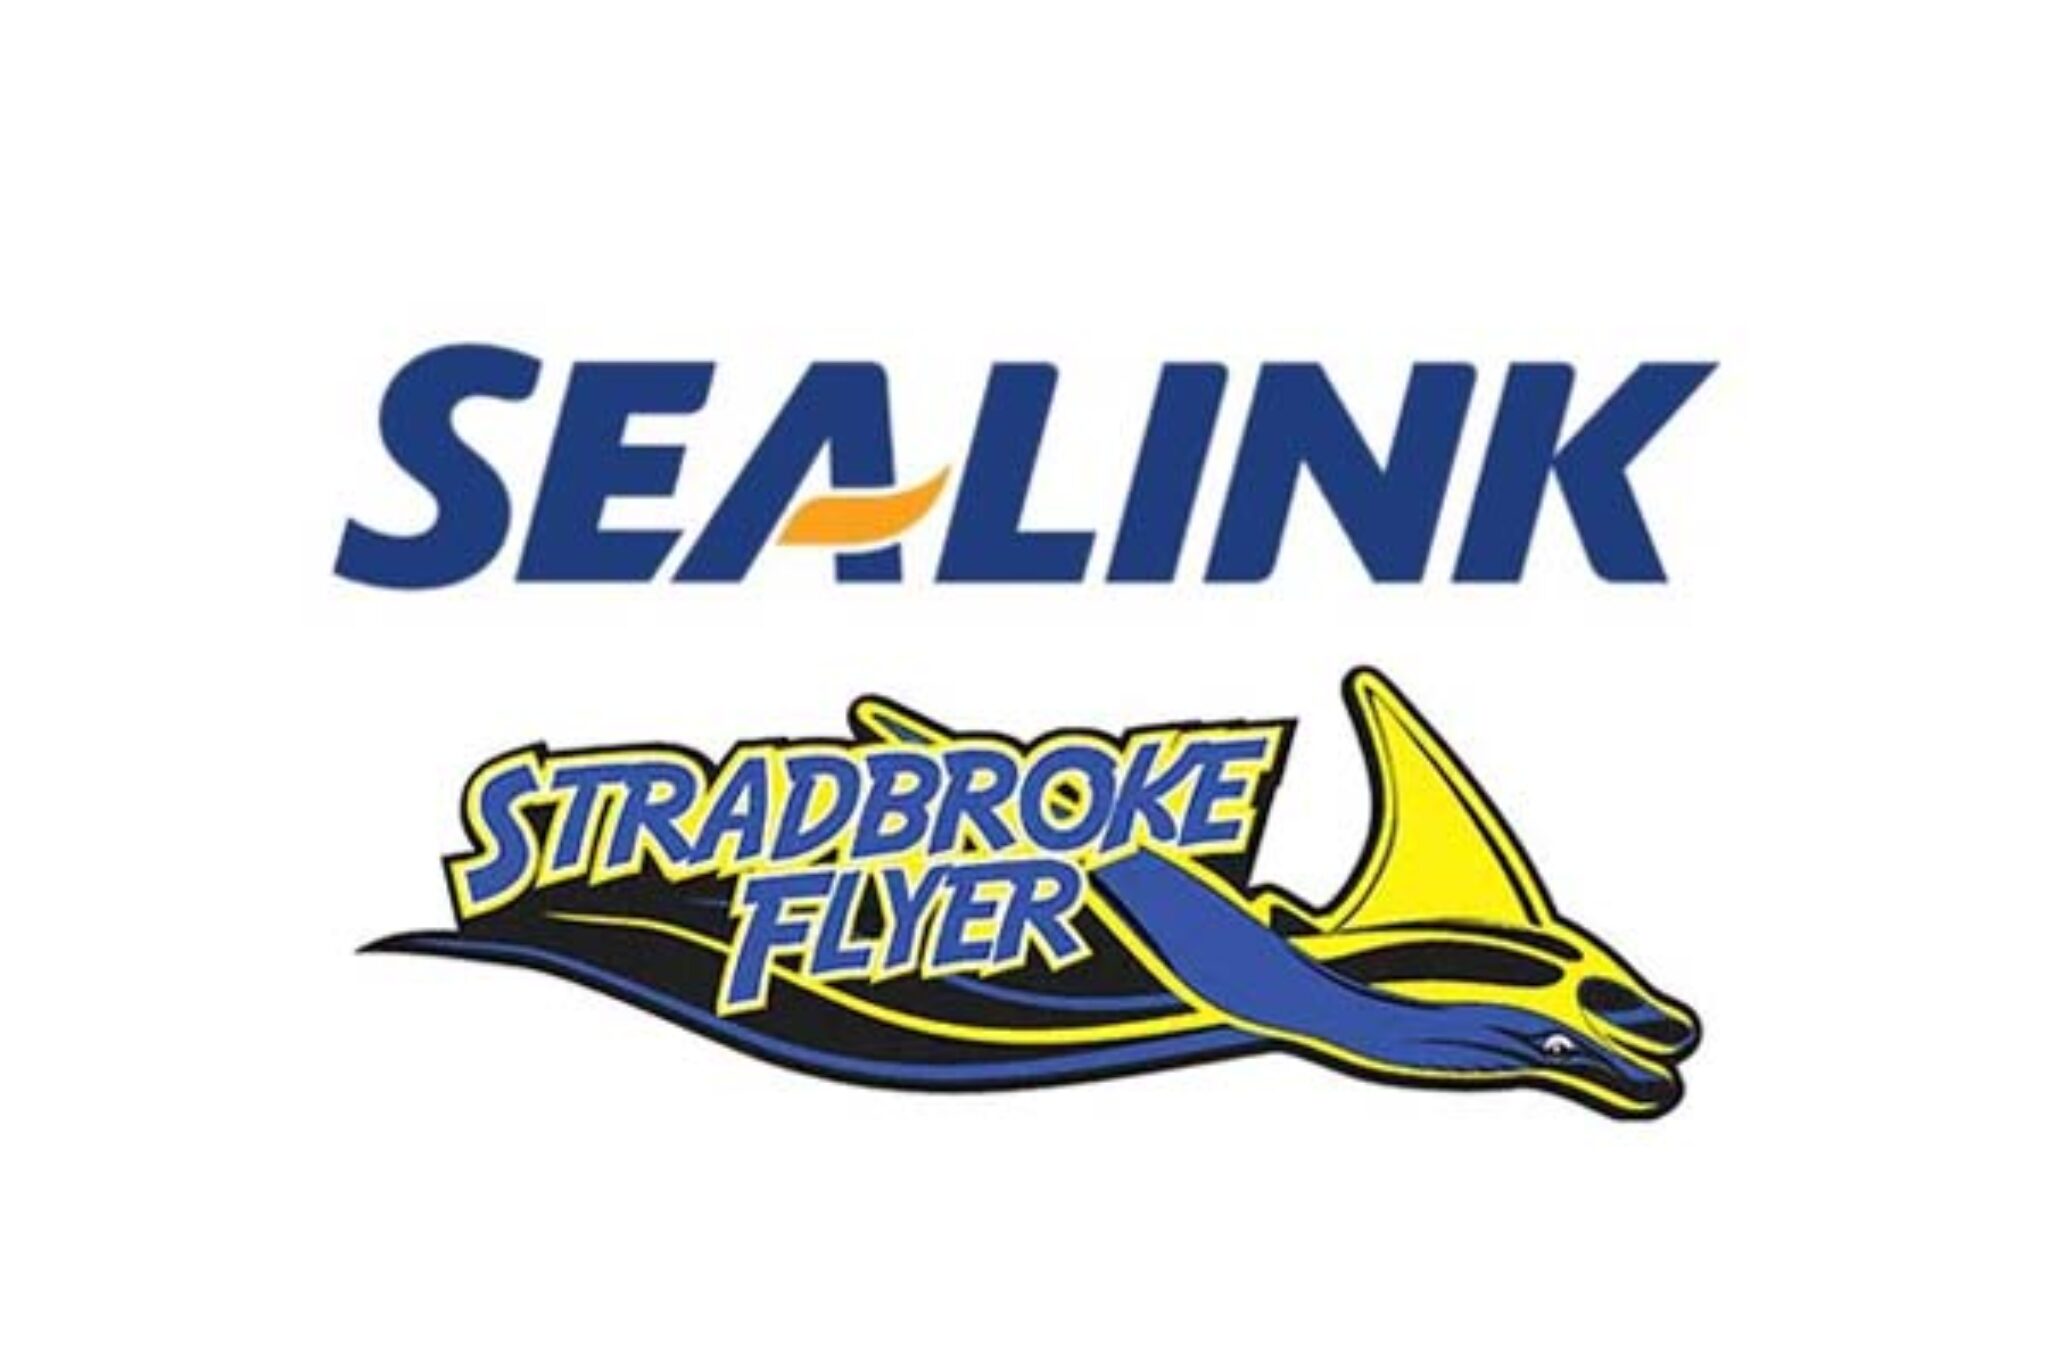 Sealink-stradbroke-flyer-2048x1365.jpg